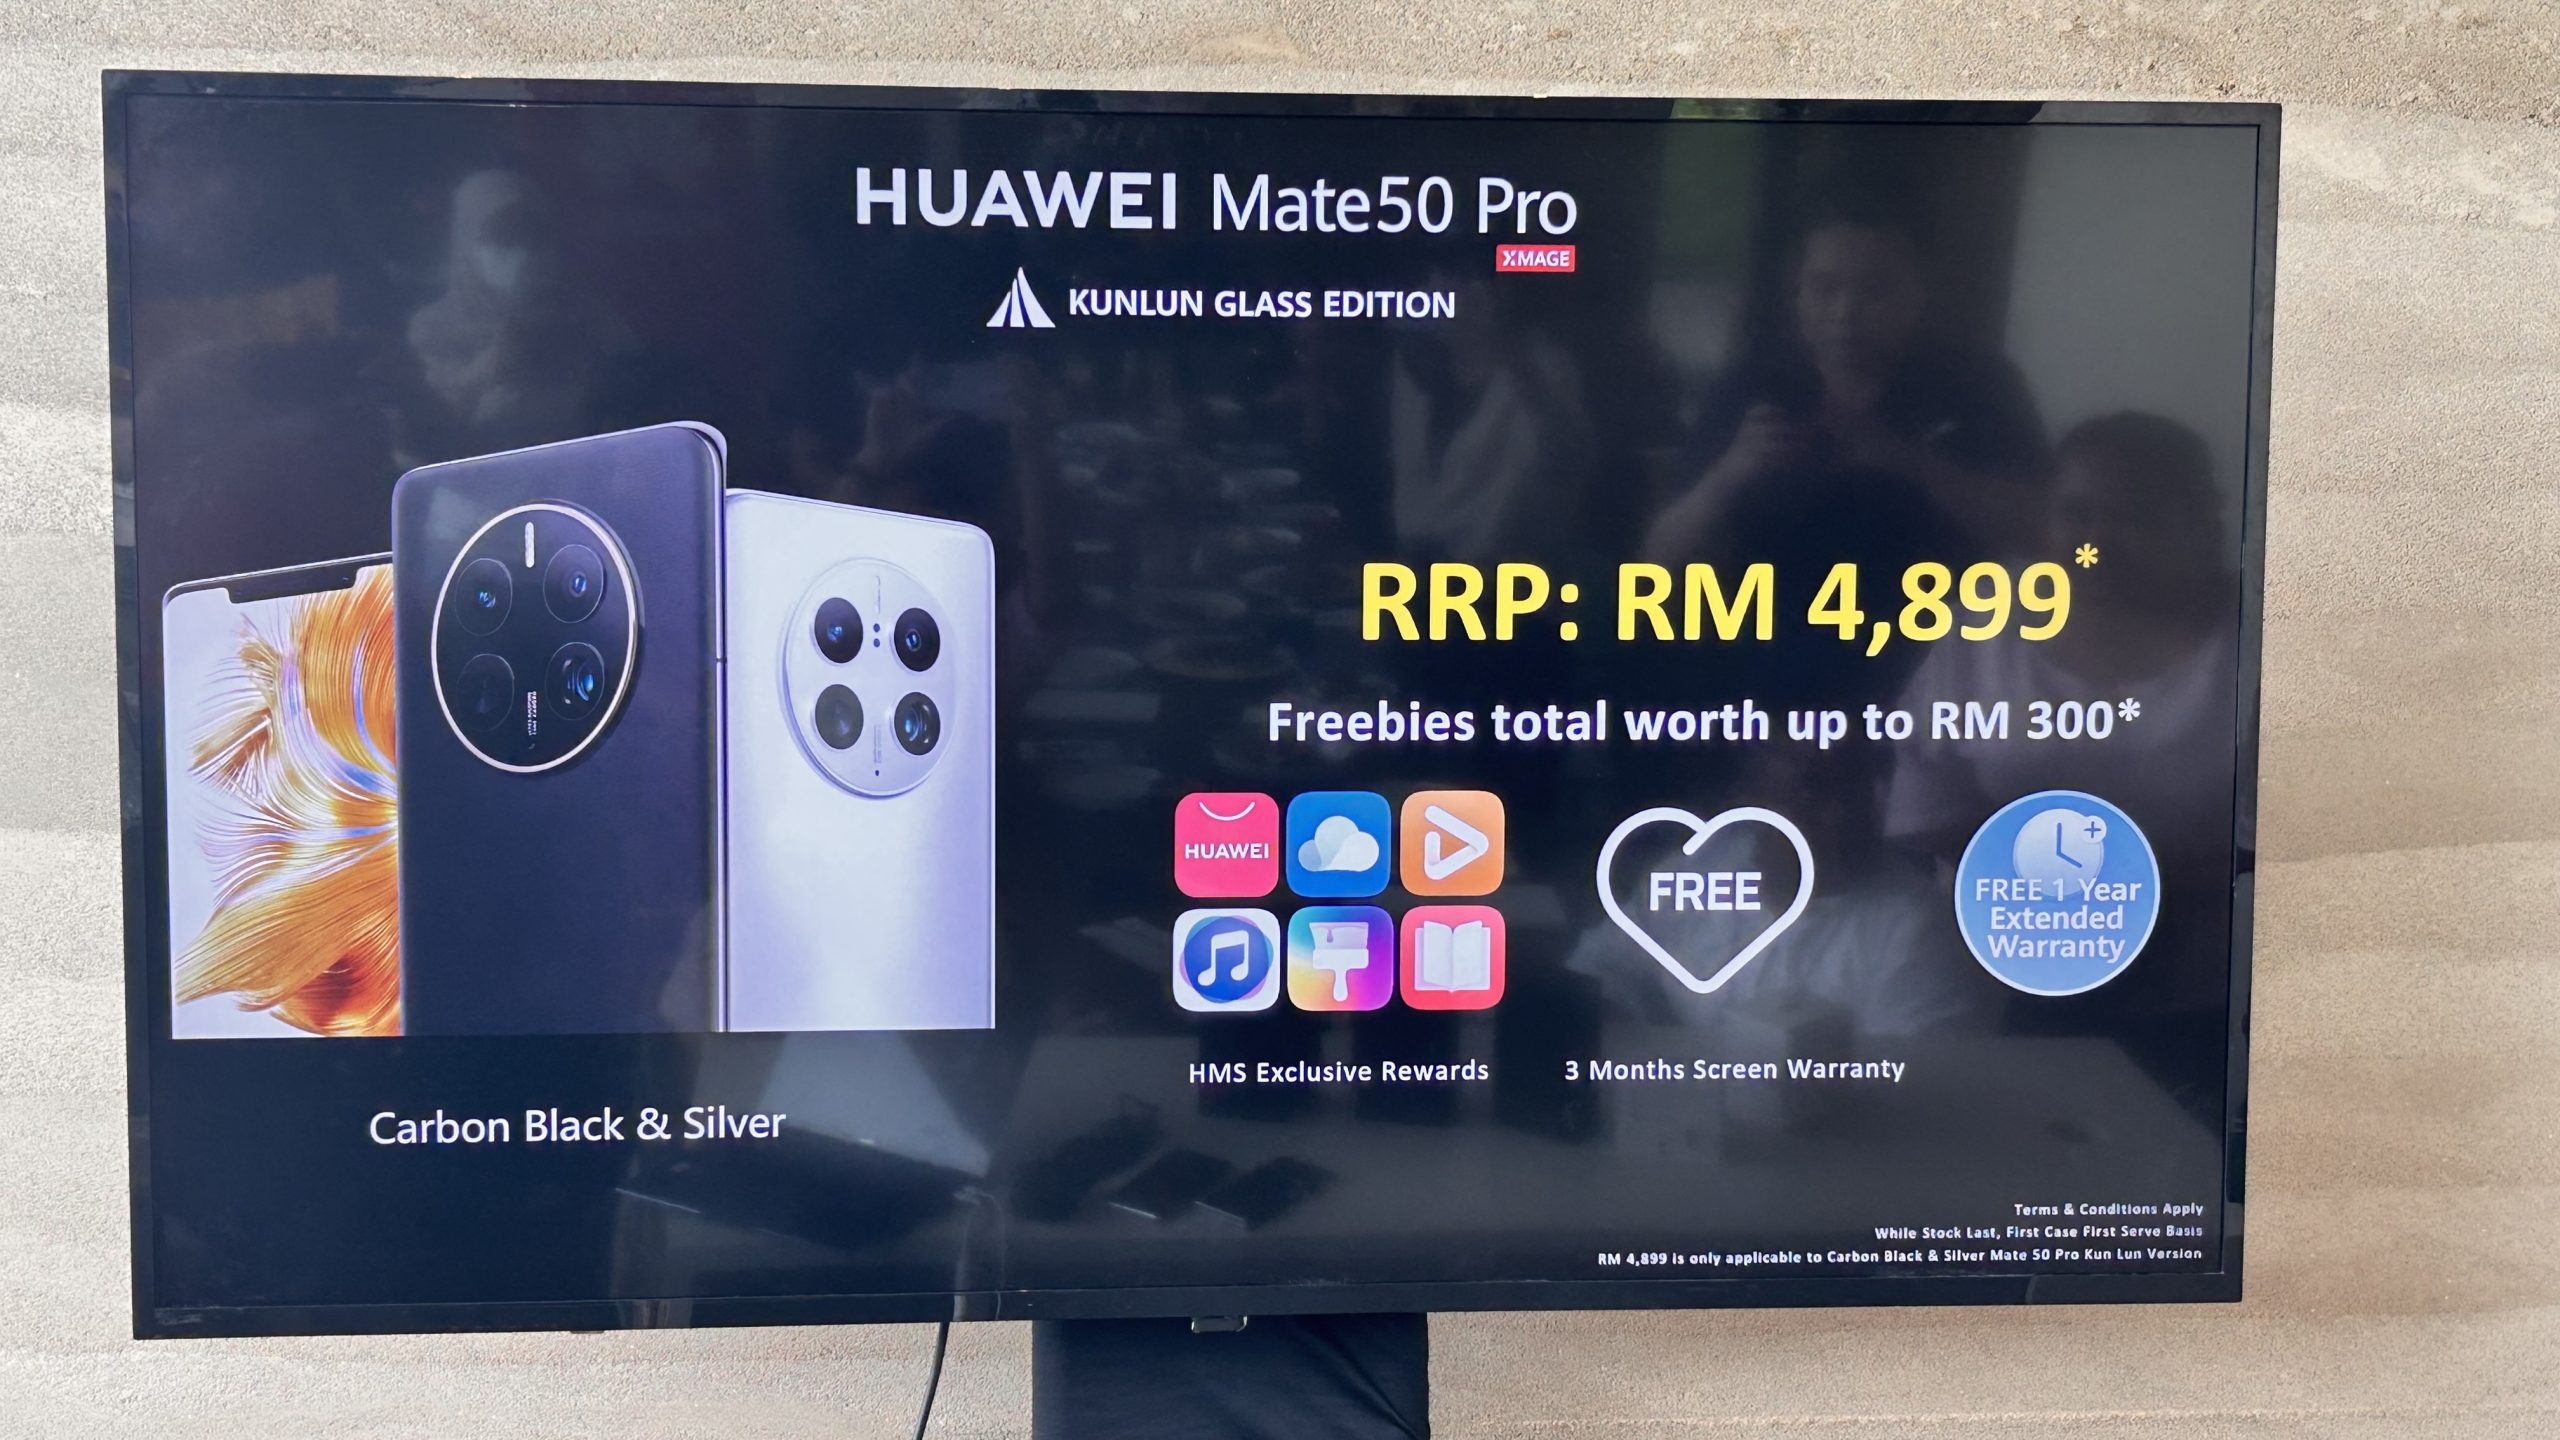 Huawei Mate50 Pro Kini Tersedia Dalam Warna Carbon Black & Silver – Berharga RM4899